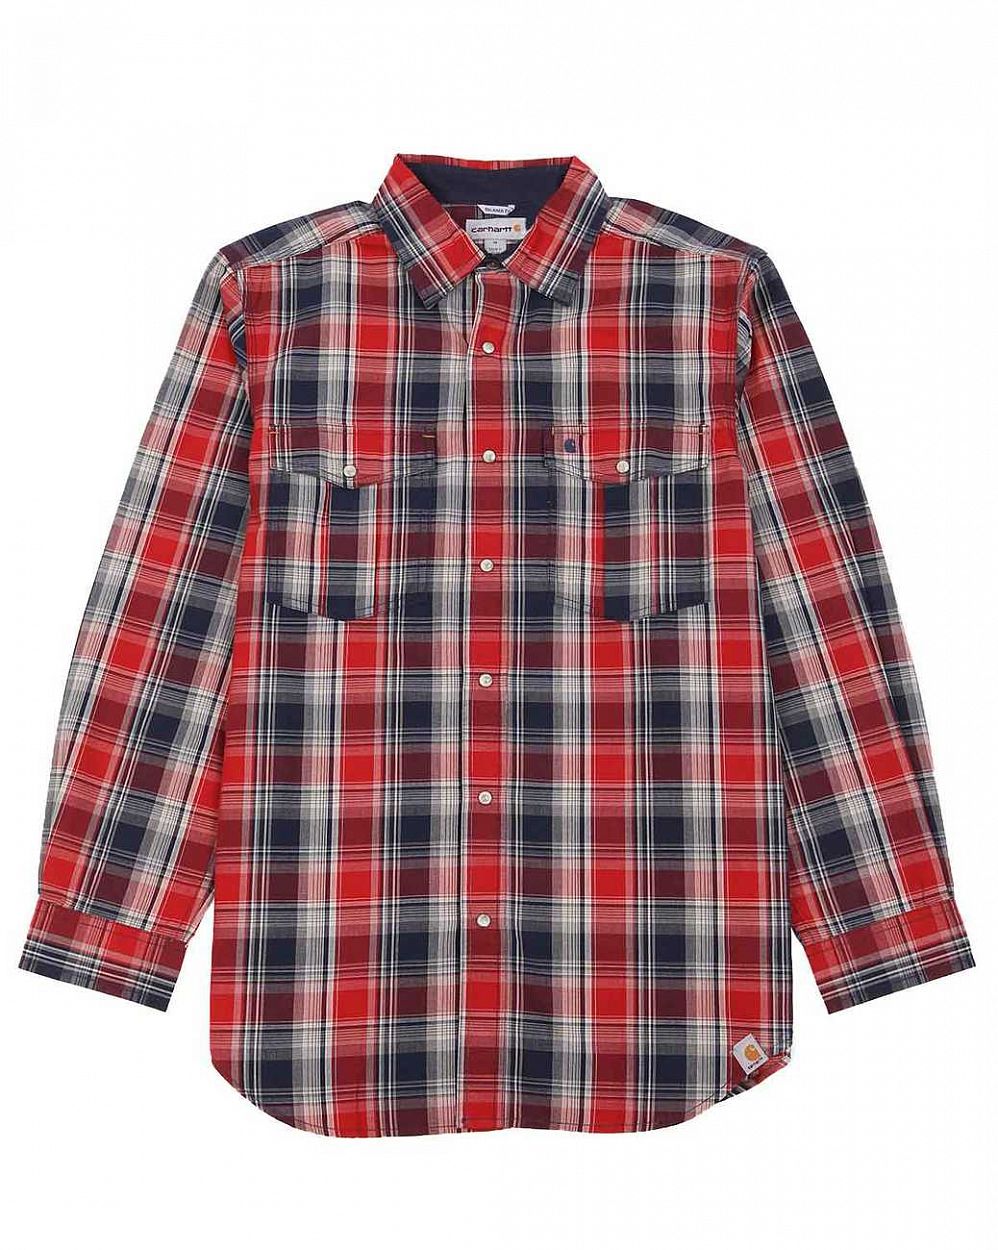 Рубашка мужская с длинным рукавом Publish 598 Red Check отзывы